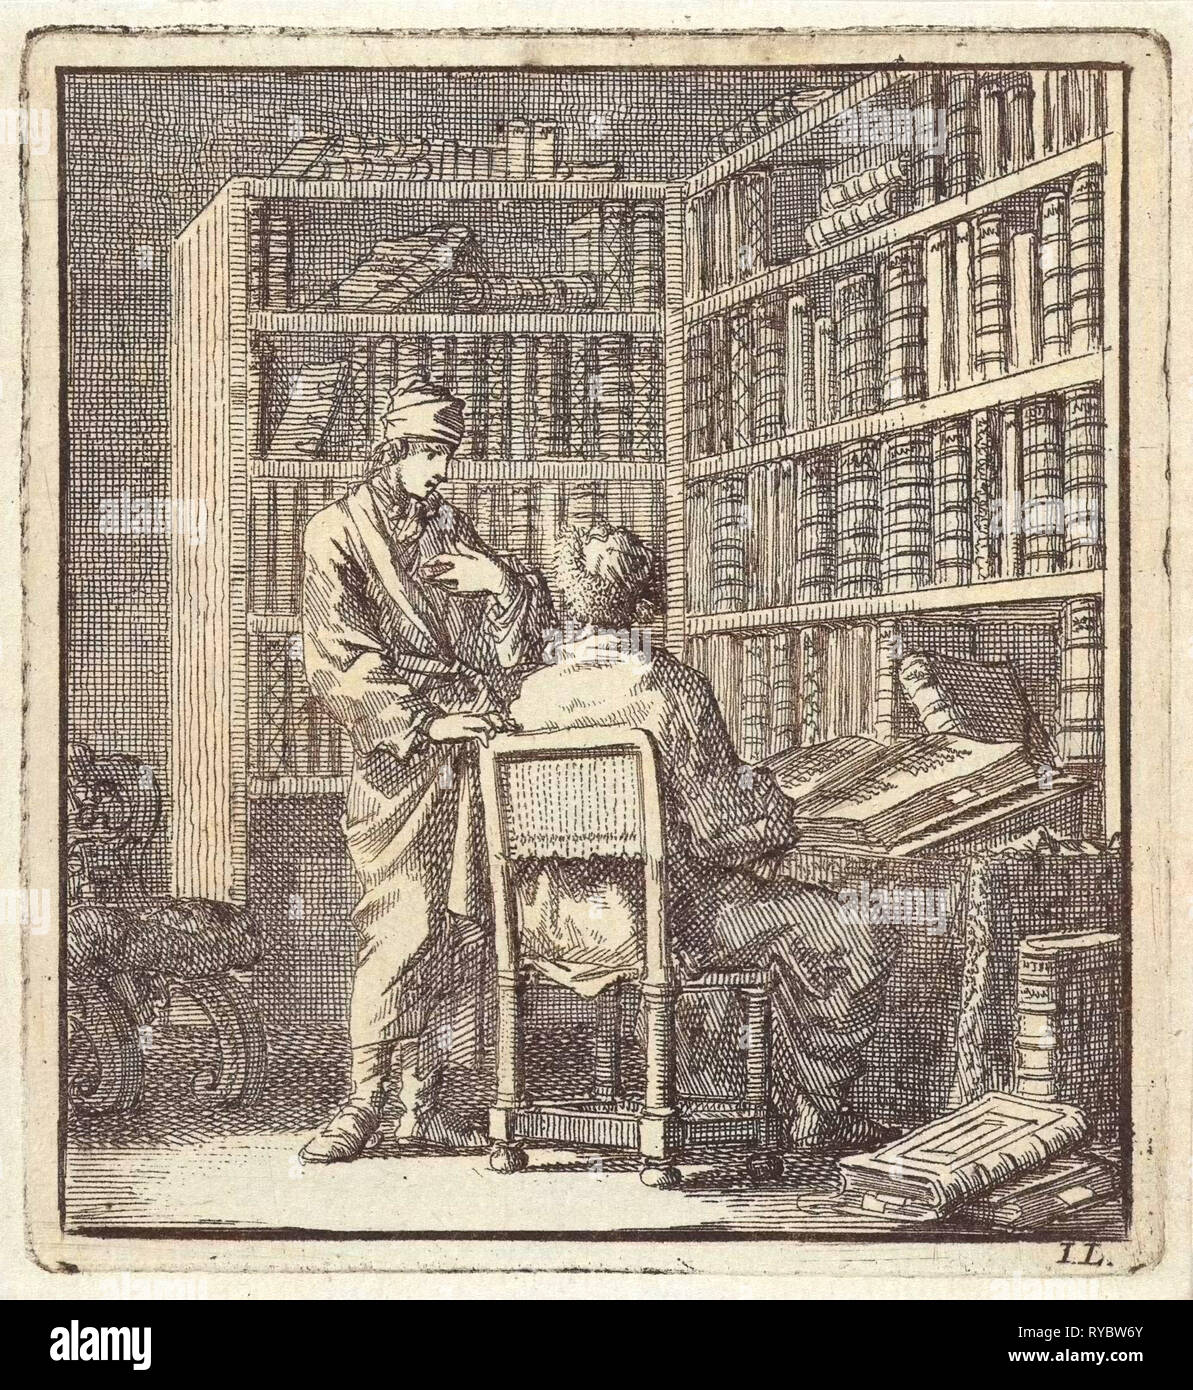 Deux hommes dans une bibliothèque, impression bouilloire : Jan Luyken, mer. Arentsz & Pieter Cornelis van der Sys II, 1711 Banque D'Images